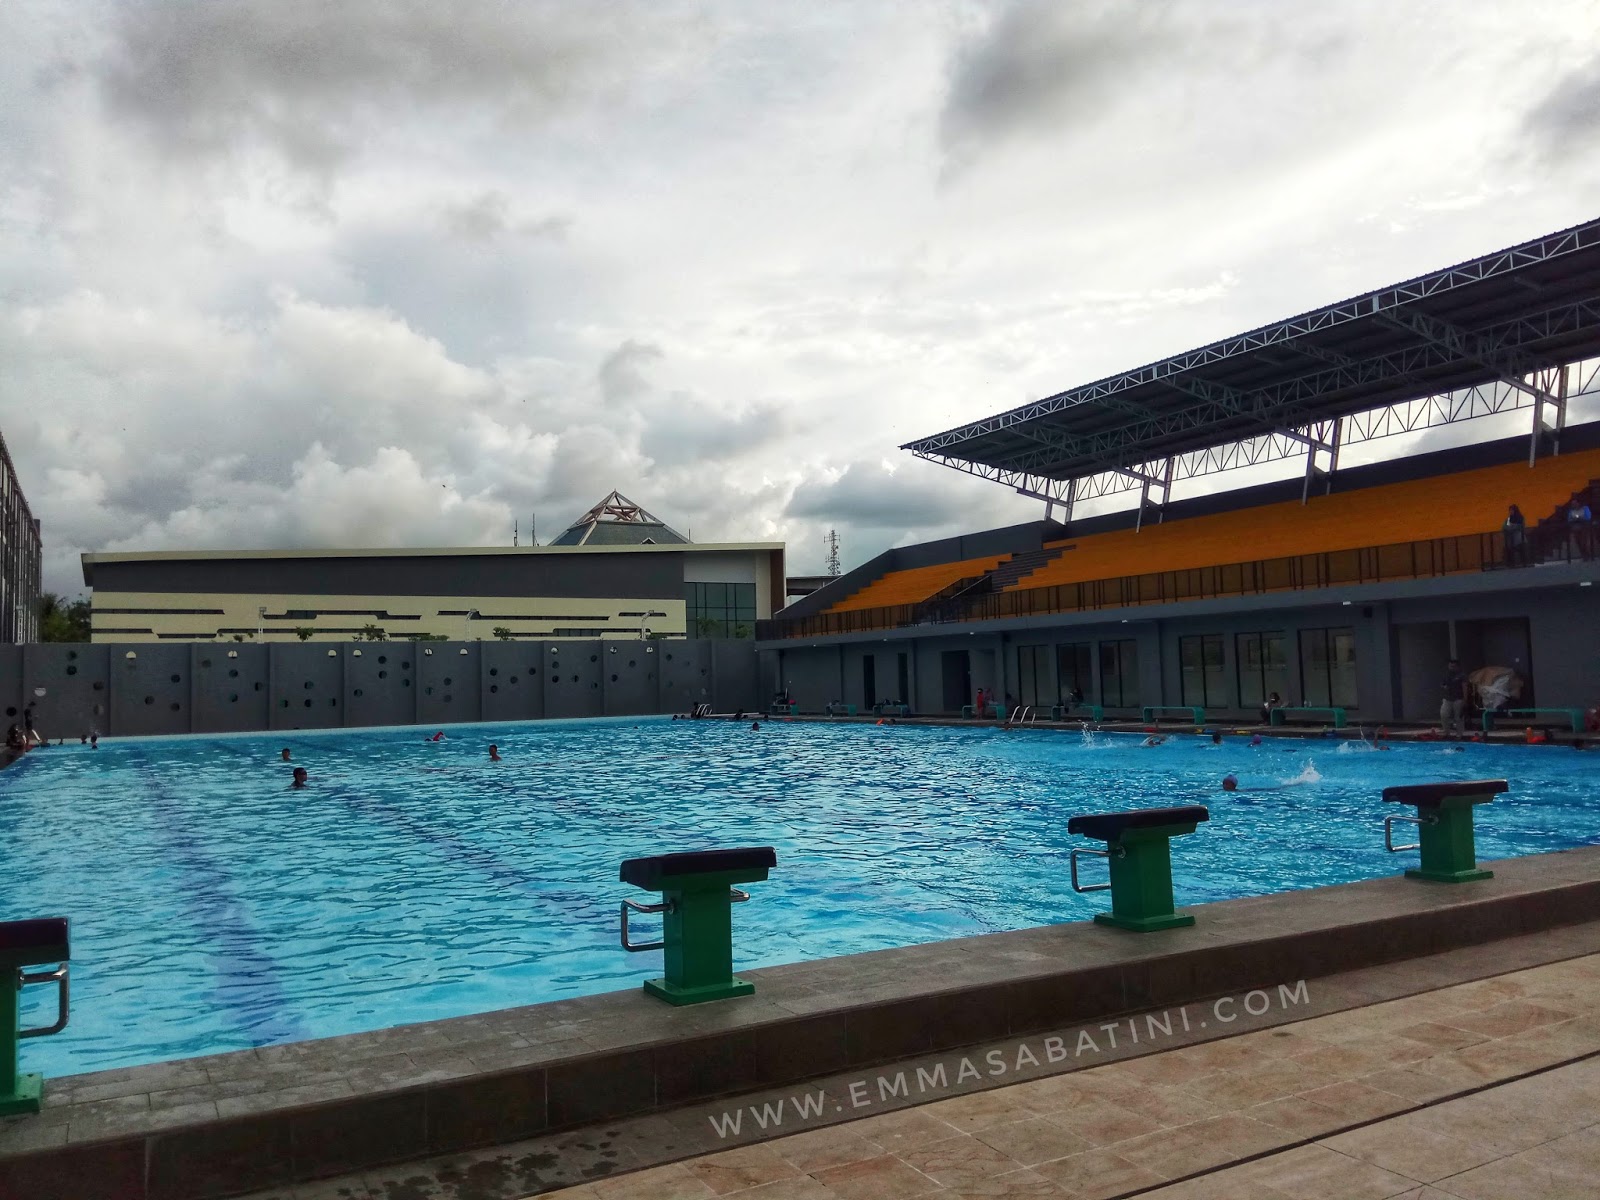 Ada lagi kolam renang baru yang asyik buat olahraga di Kota Cilegon Banten Berlokasi di ASA Sport Center kolam renang ASA baru dibuka pada Februari 2018